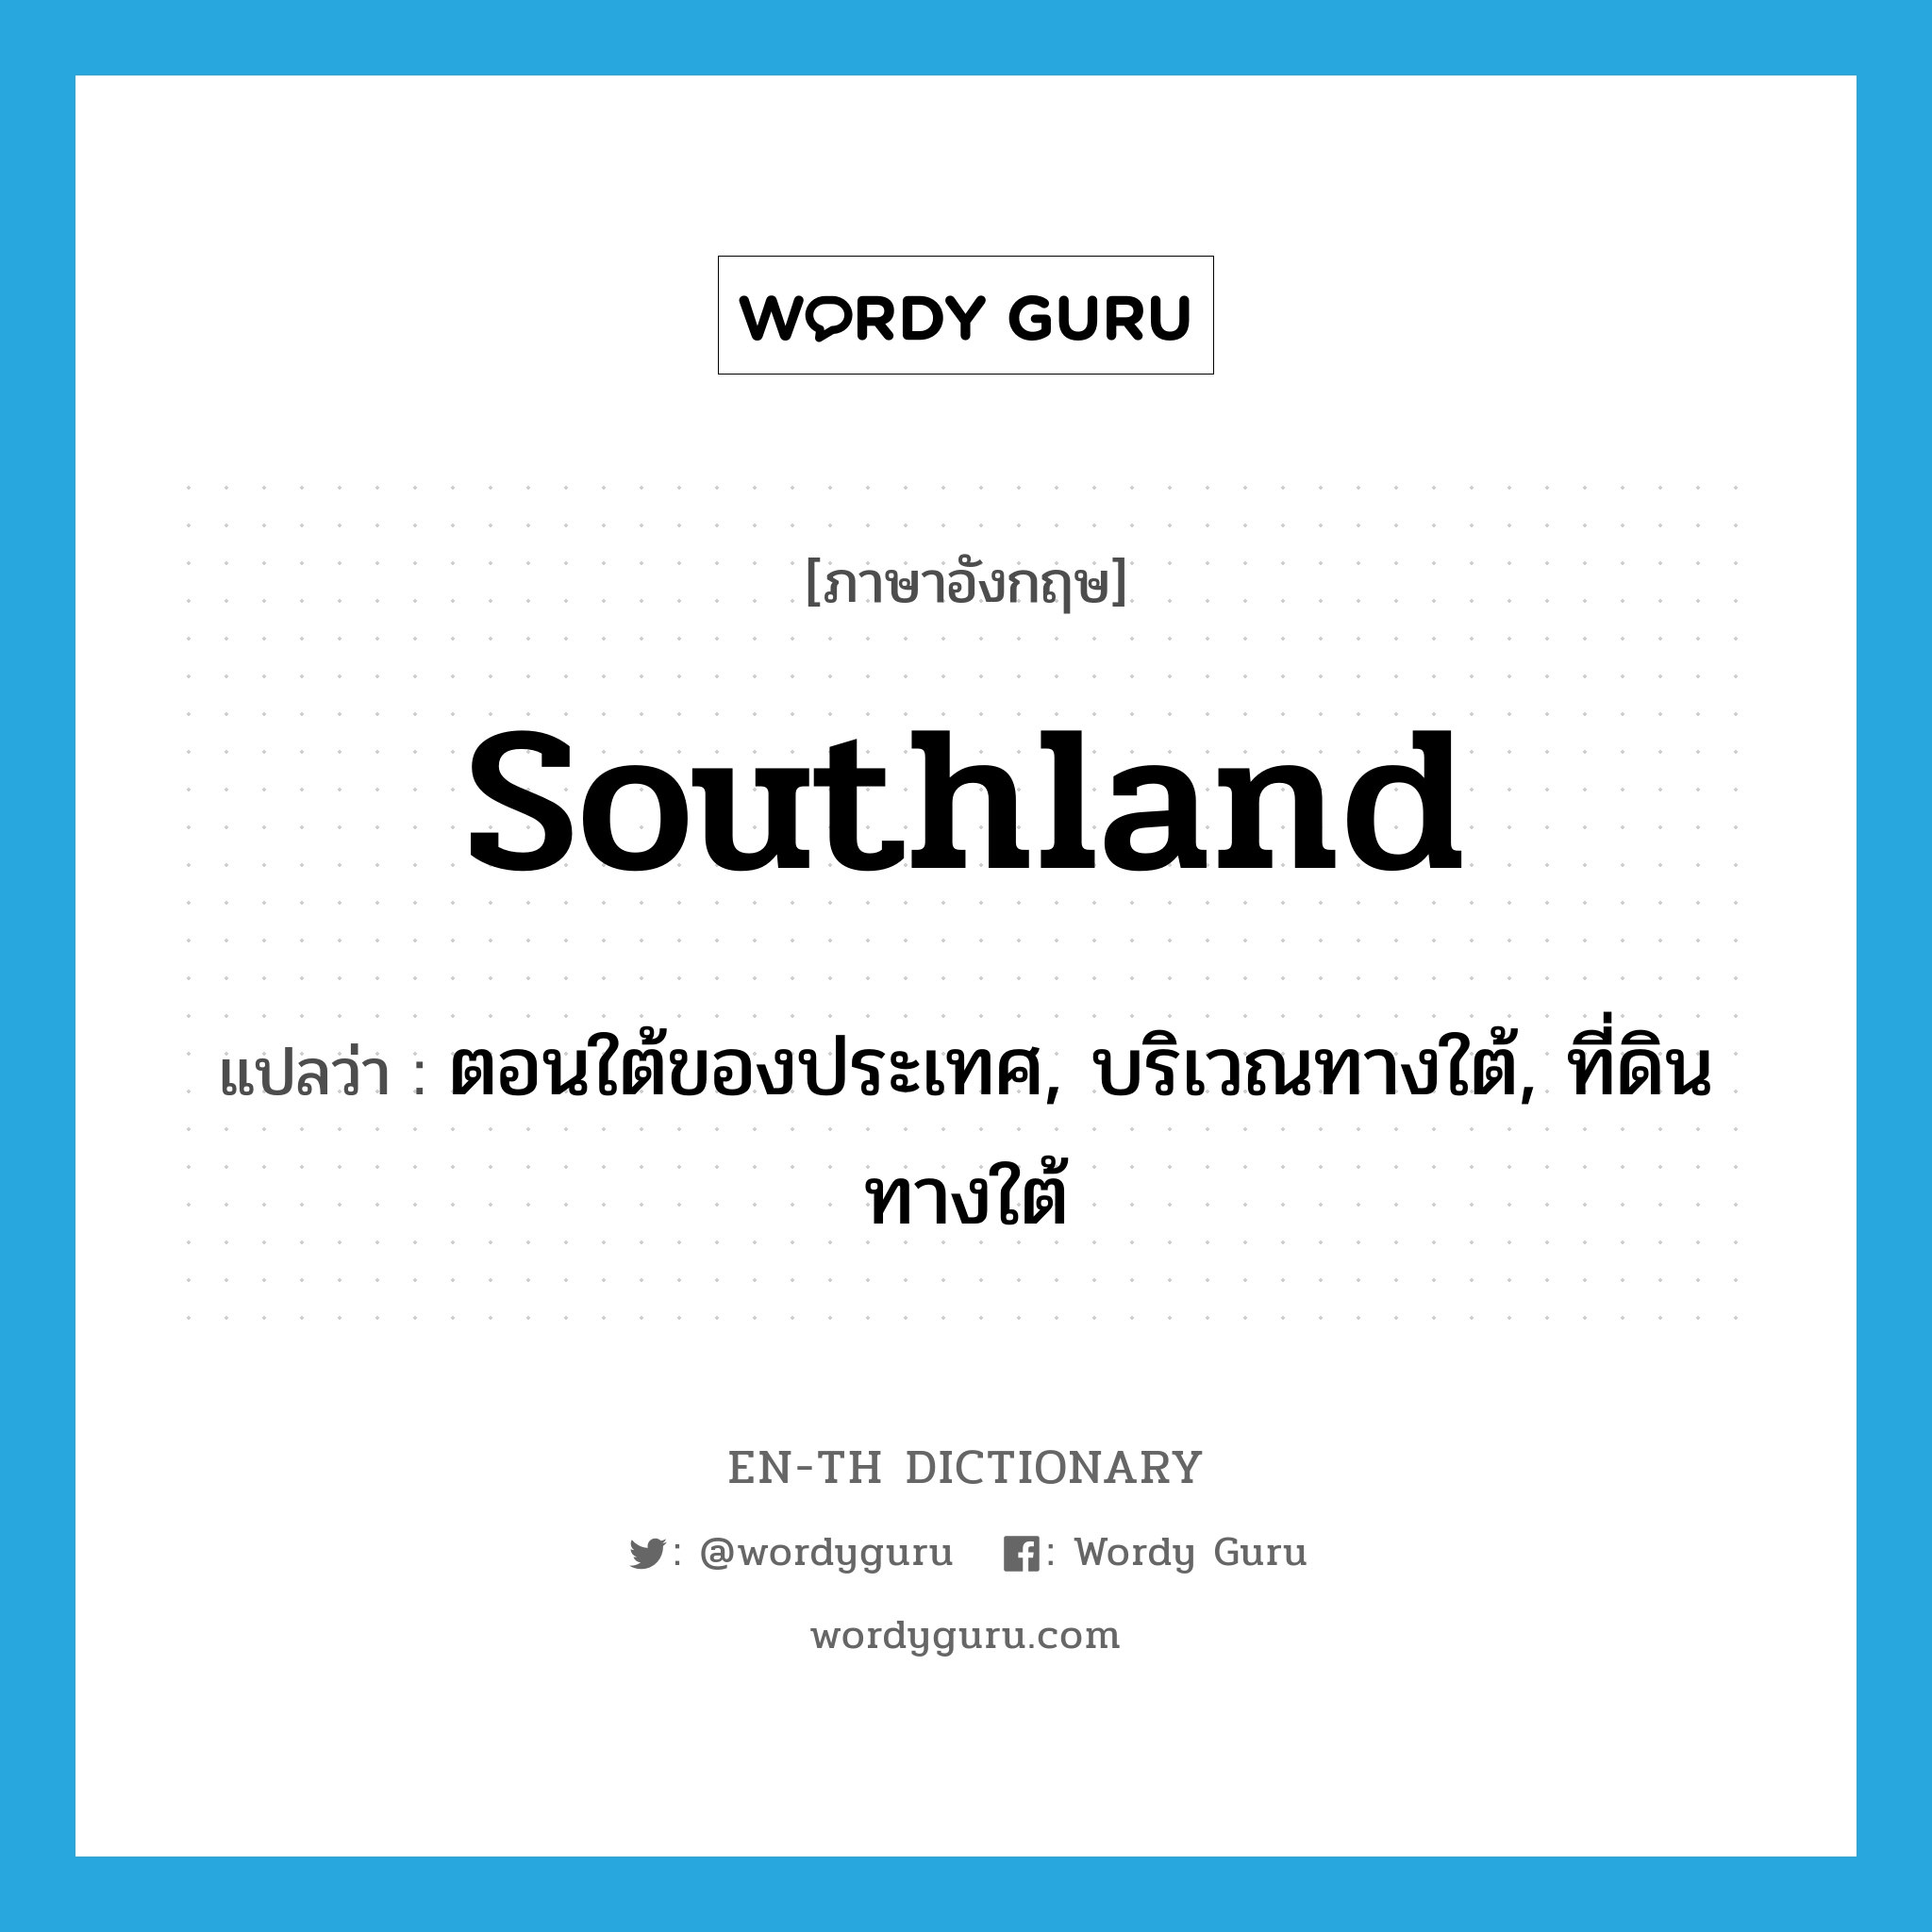 southland แปลว่า?, คำศัพท์ภาษาอังกฤษ southland แปลว่า ตอนใต้ของประเทศ, บริเวณทางใต้, ที่ดินทางใต้ ประเภท N หมวด N